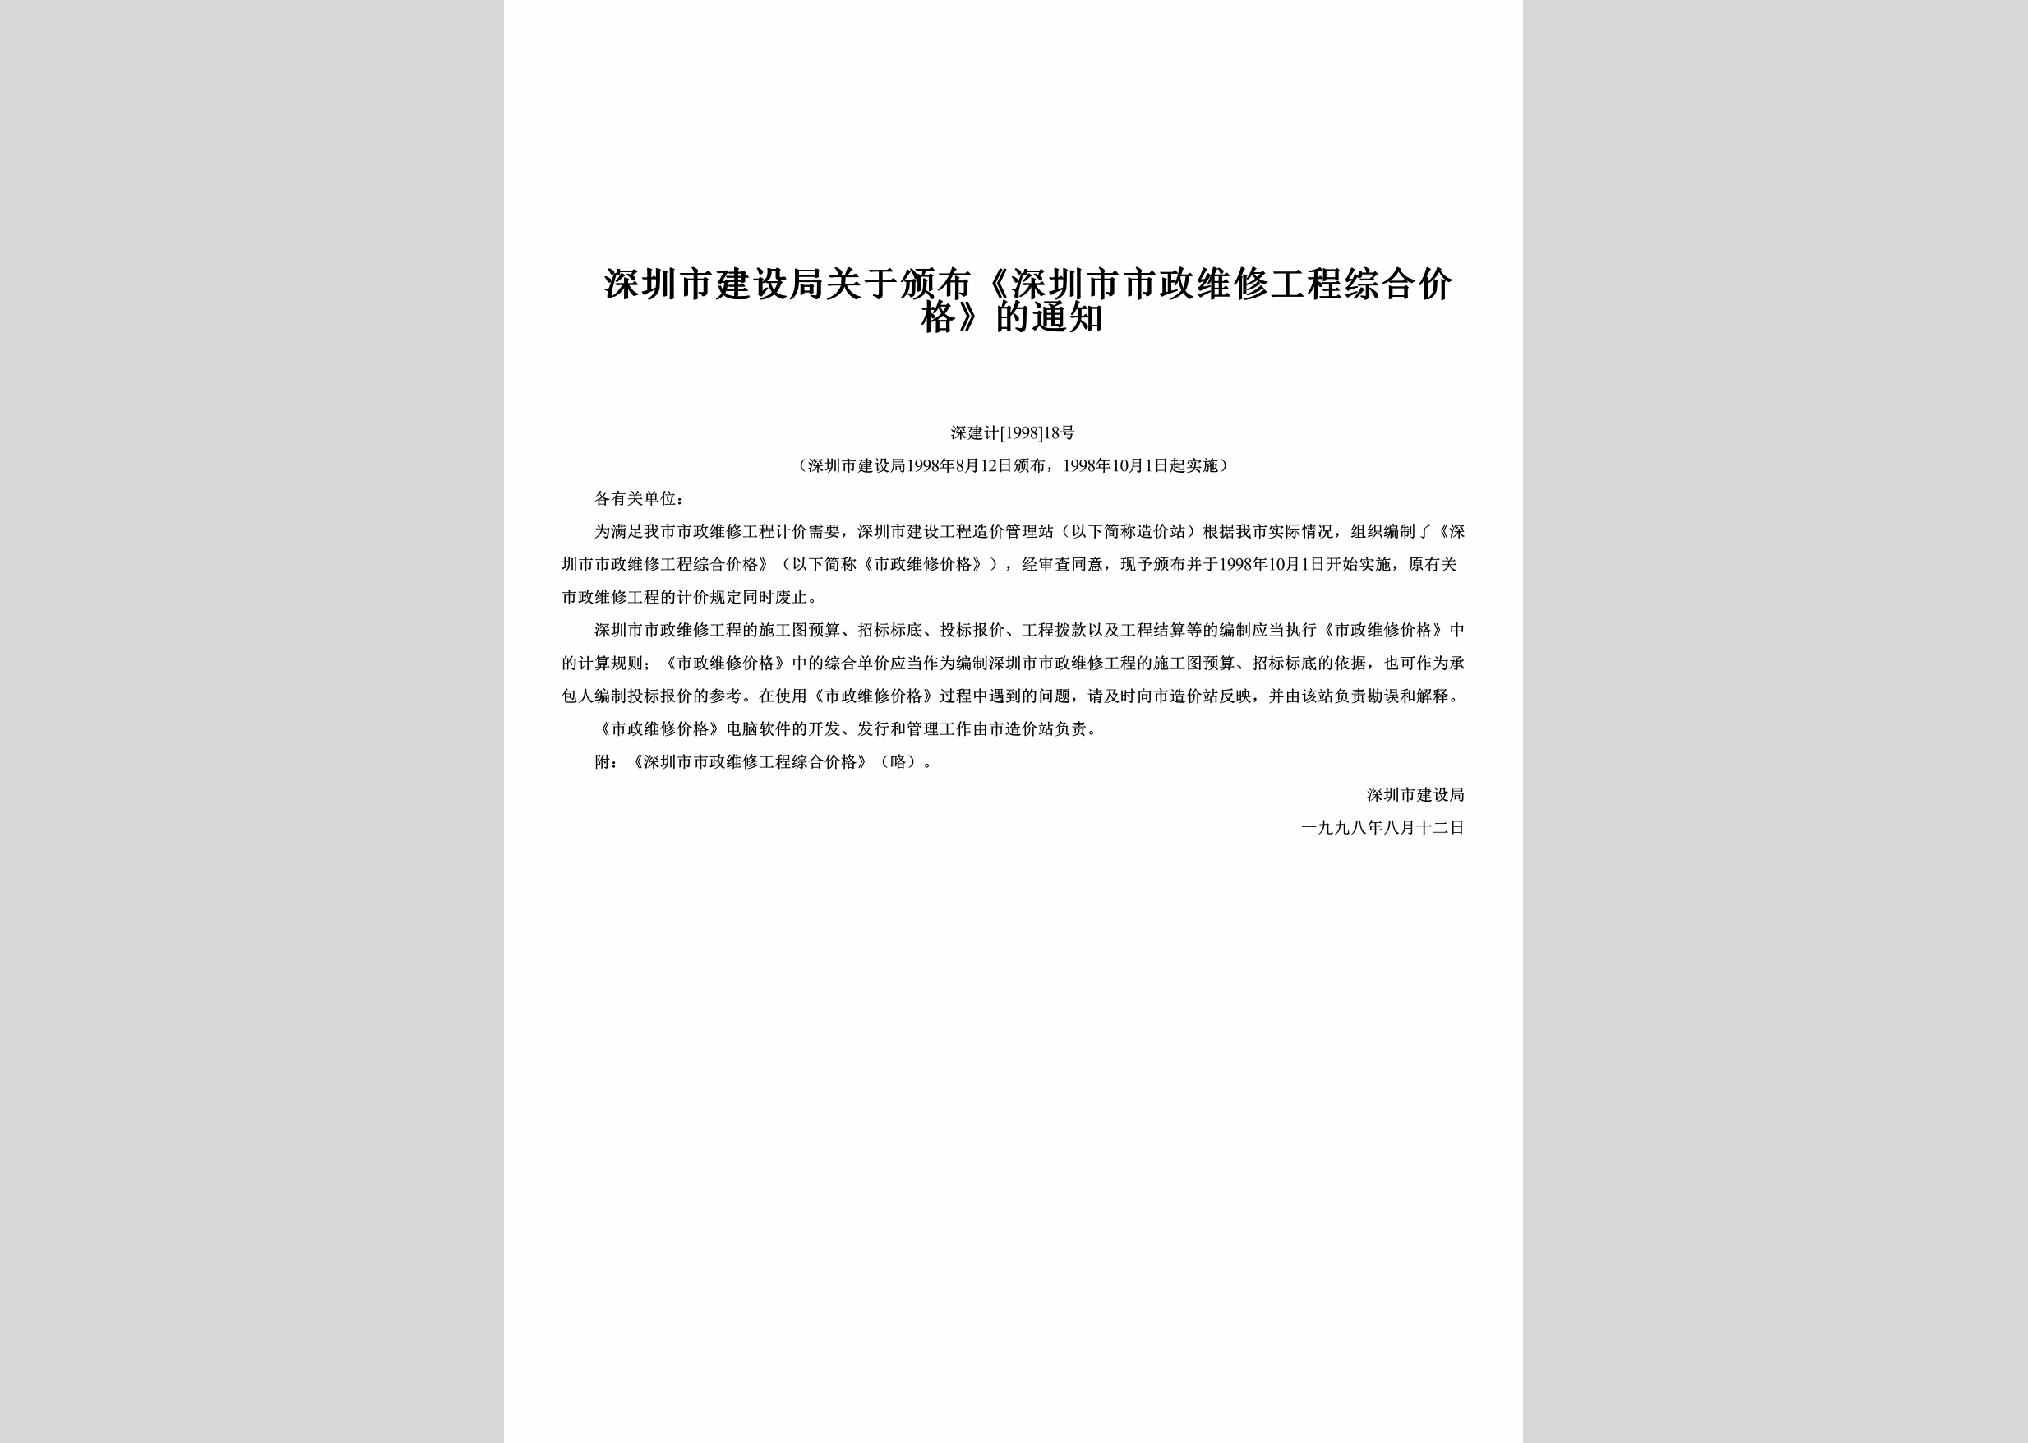 深建计[1998]18号：关于颁布《深圳市市政维修工程综合价格》的通知